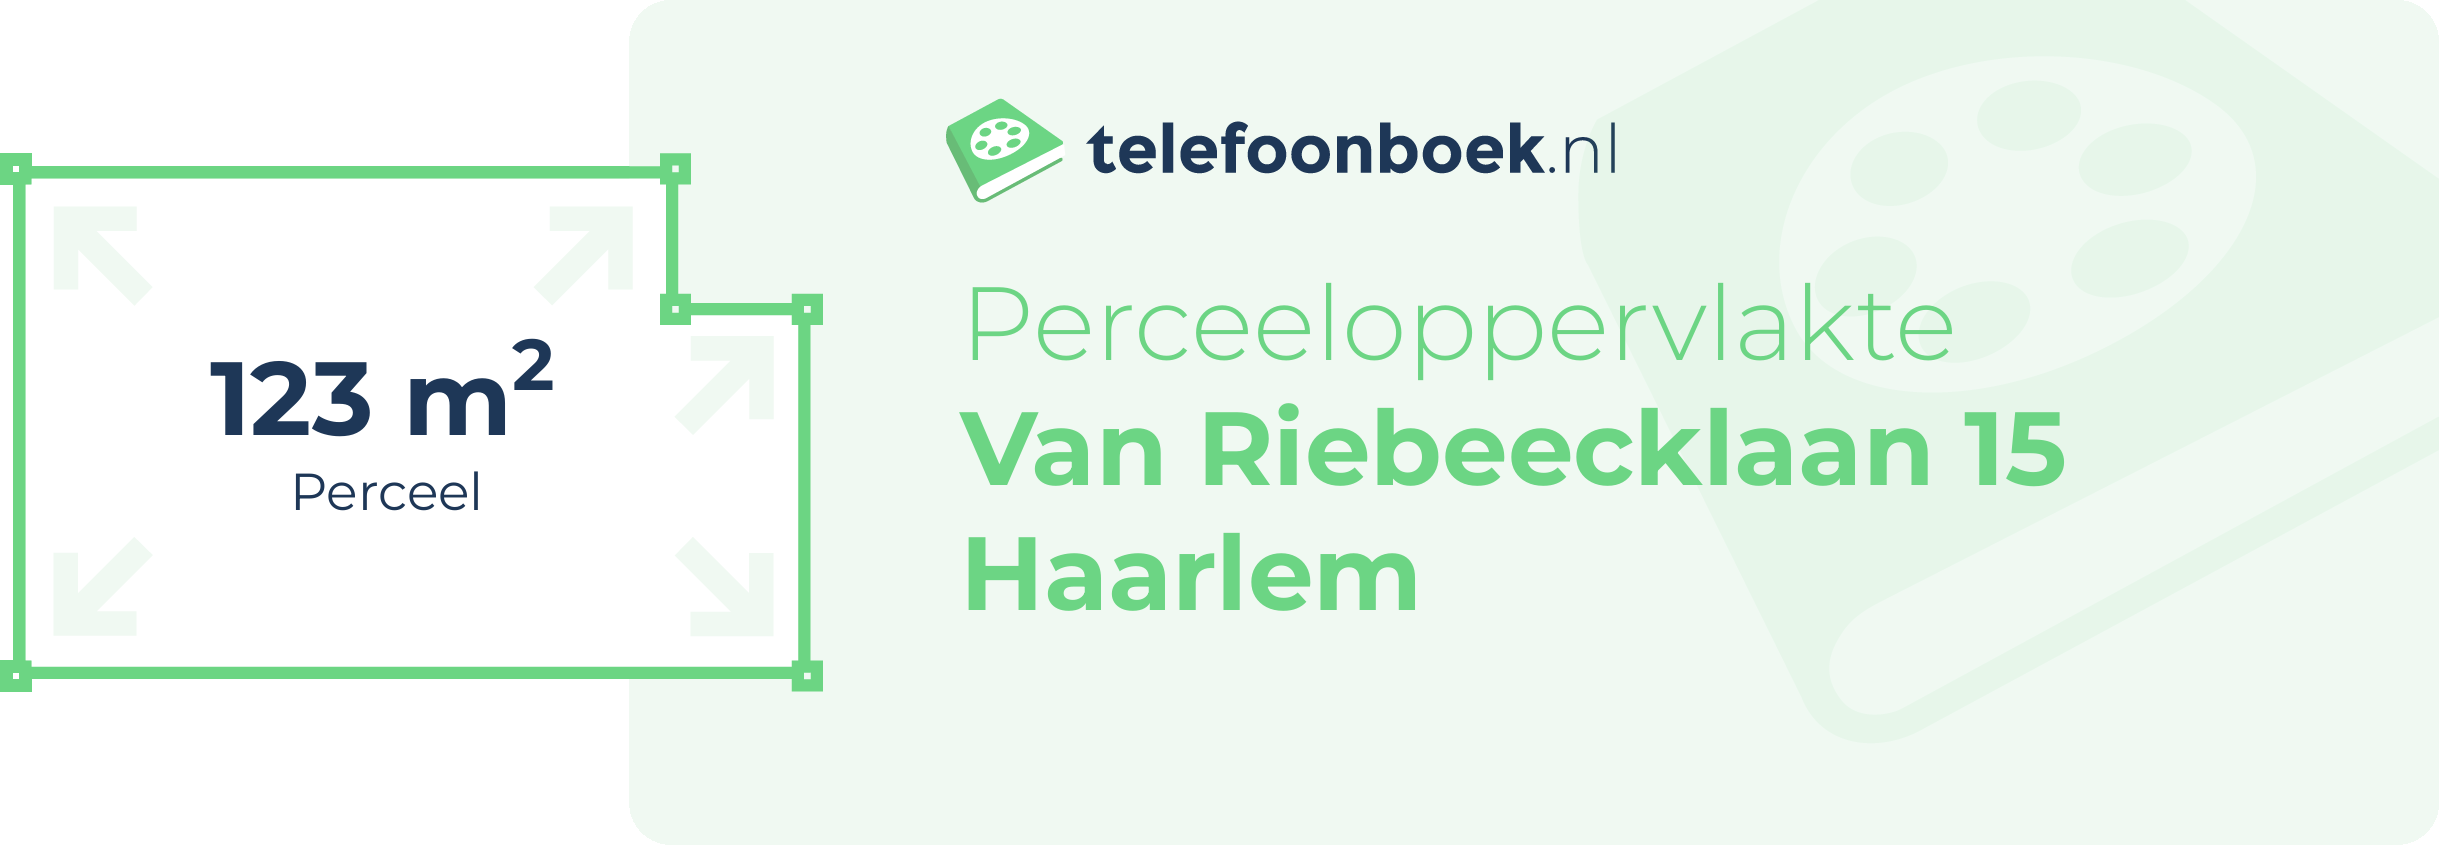 Perceeloppervlakte Van Riebeecklaan 15 Haarlem